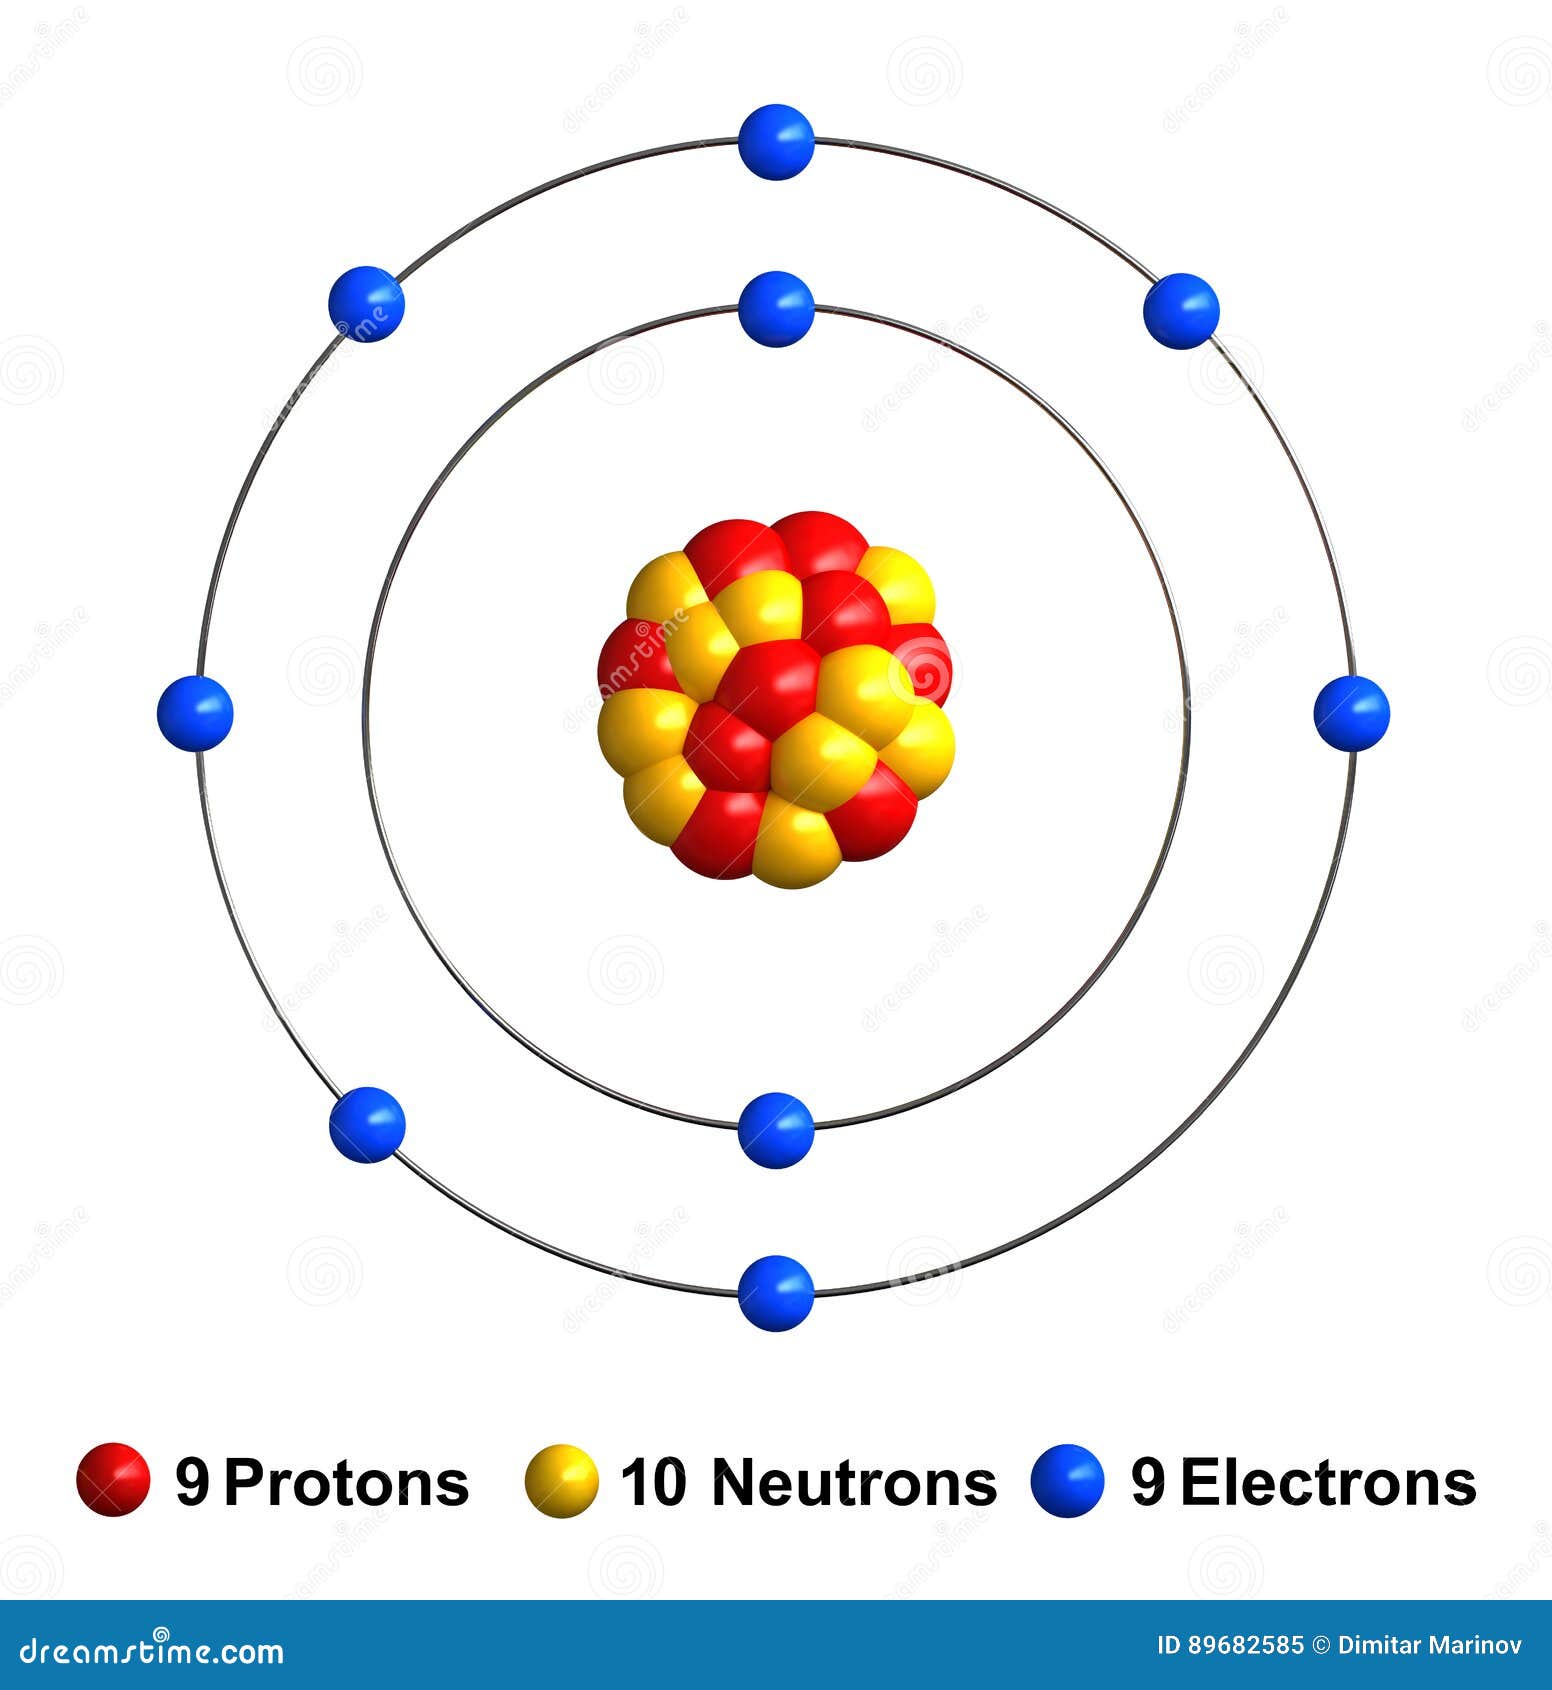 Fluorine Atom 3d Model